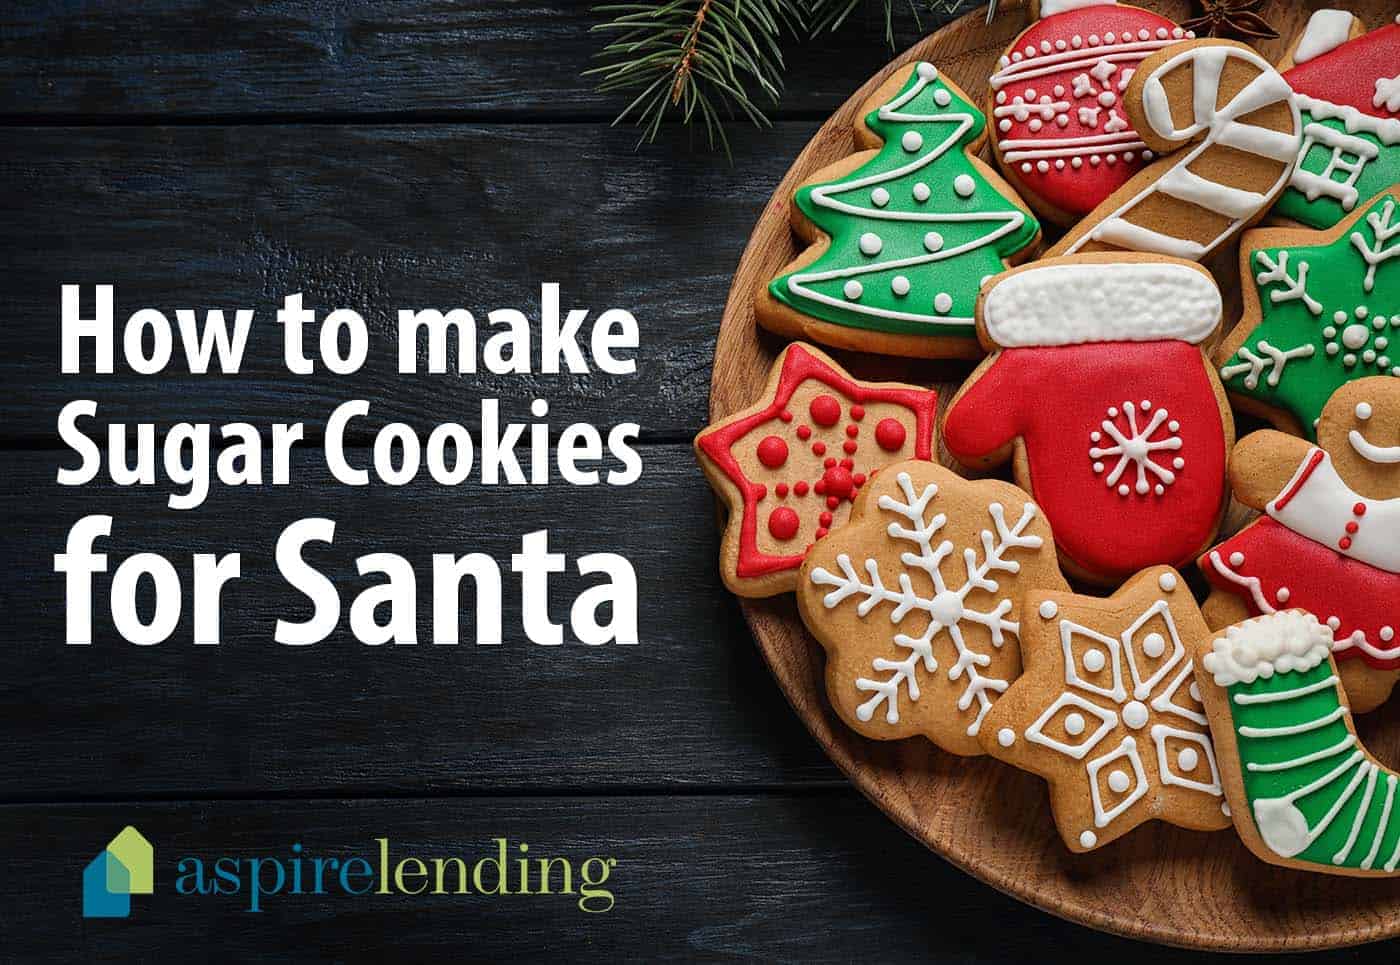 Sugar cookies for Santa